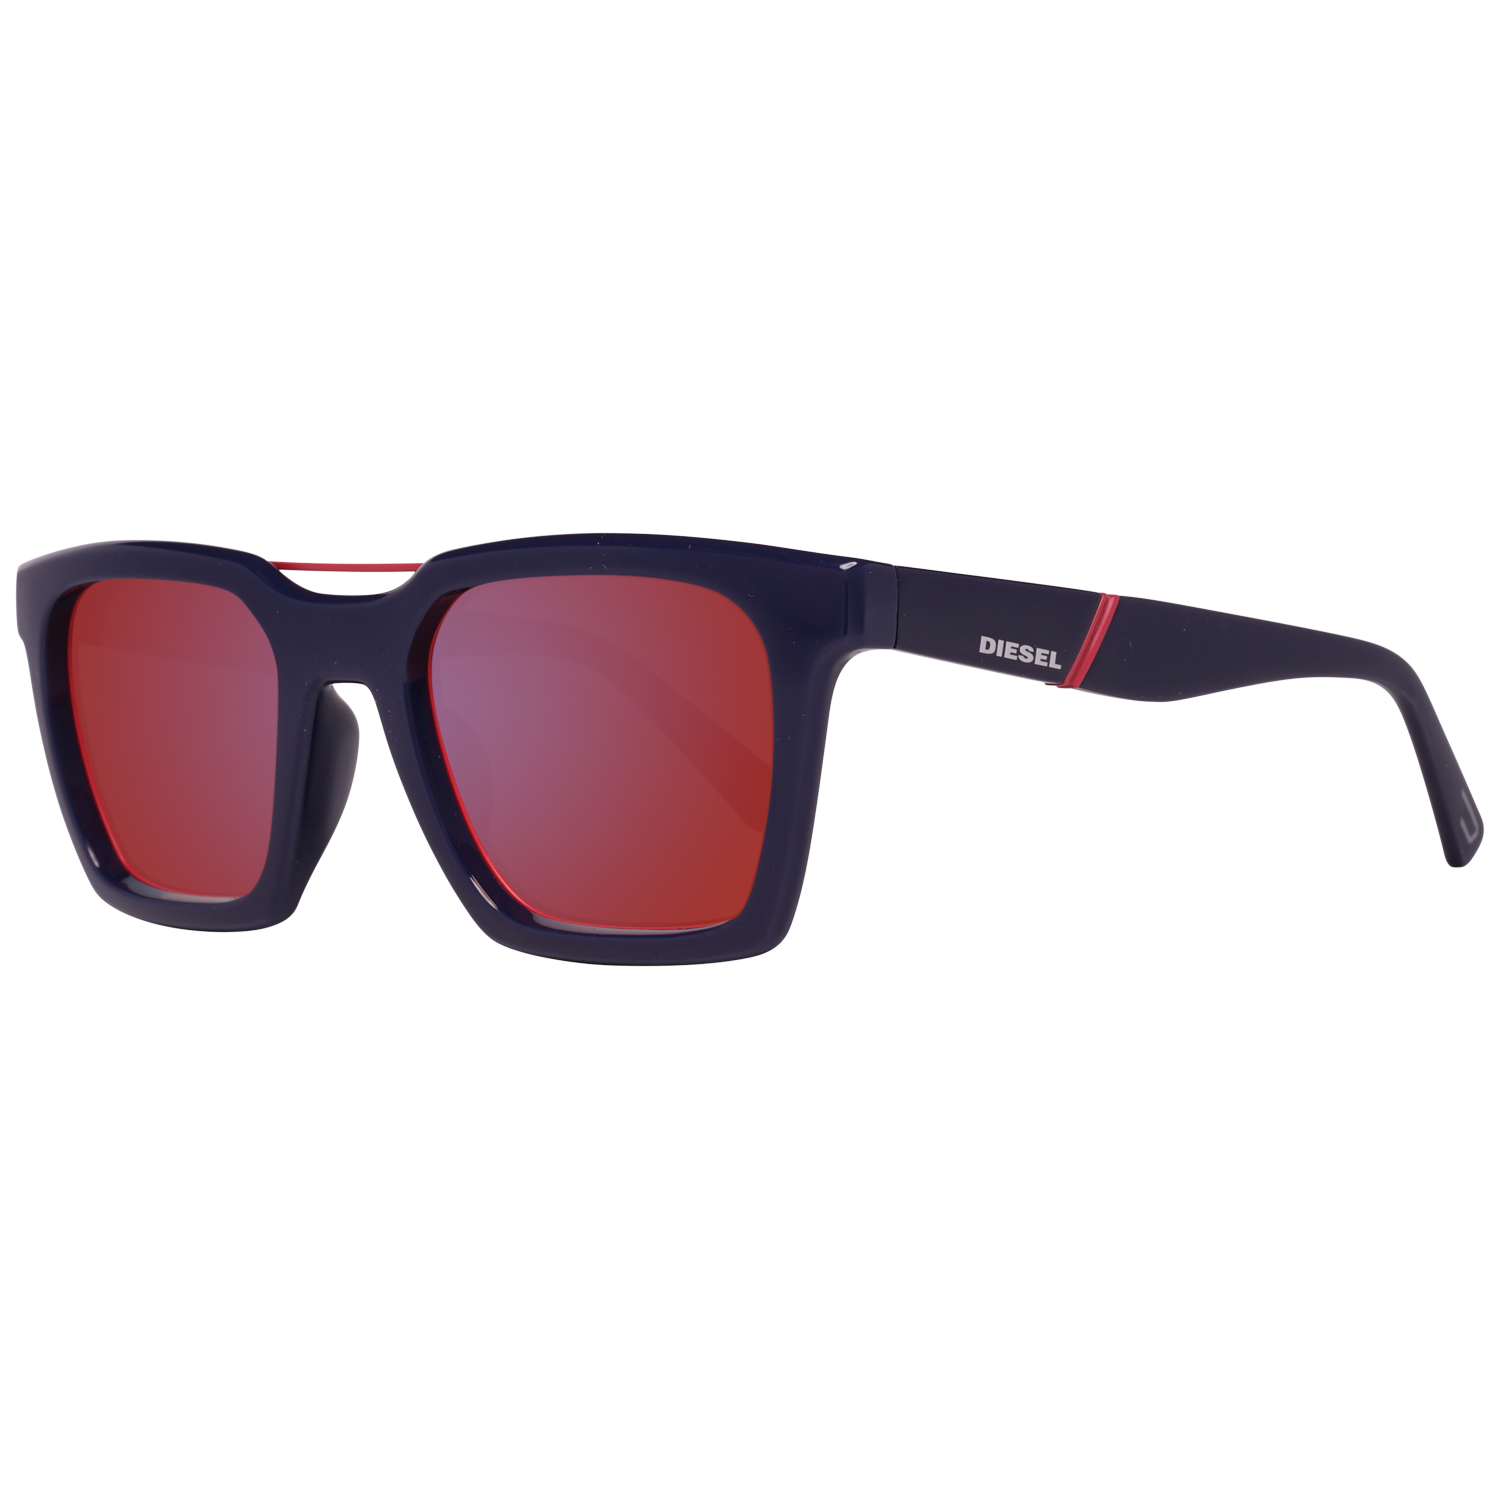 Diesel Sunglasses DL0250 90U 52